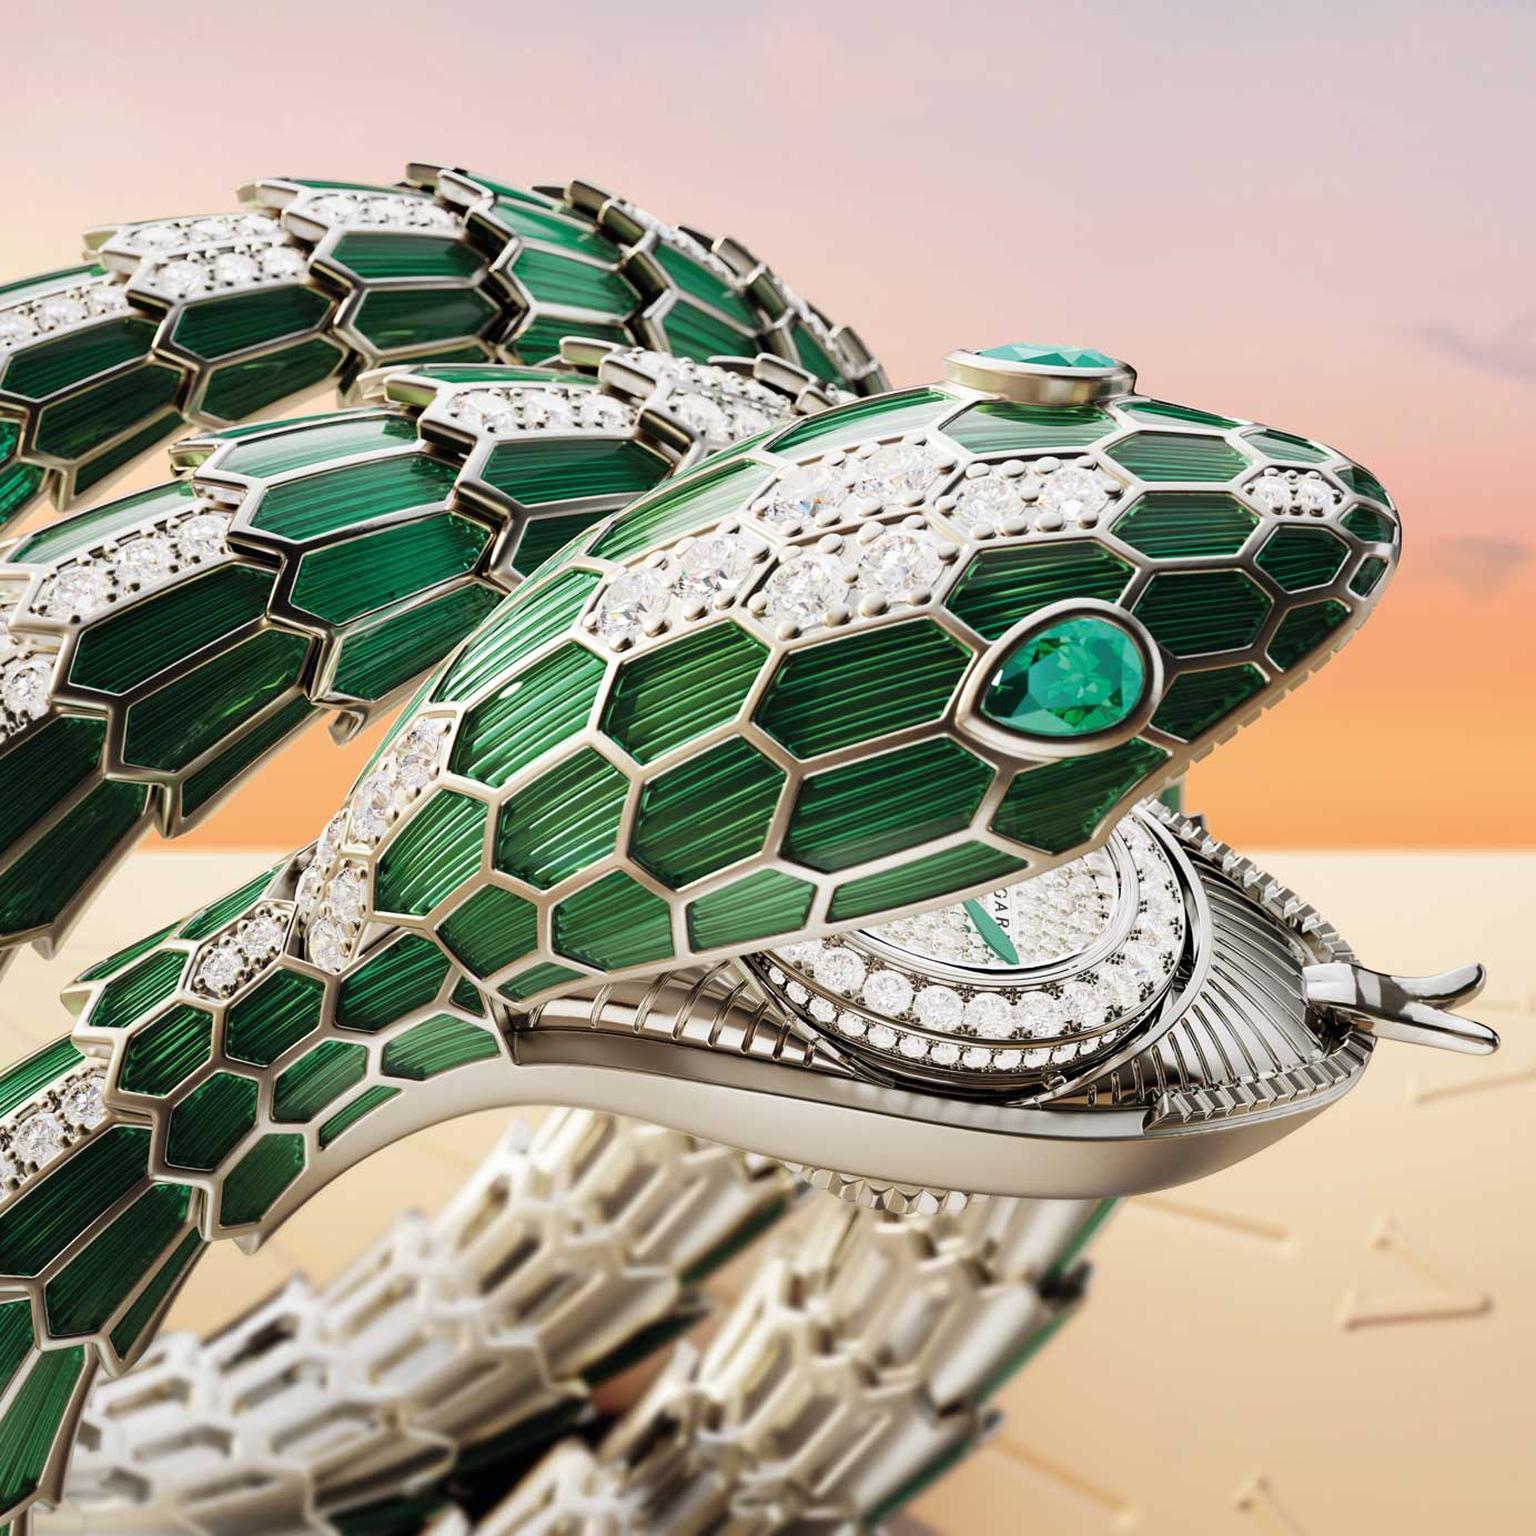 Bulgari-Serpenti-Misteriosi-Piccolissimo-Secret-high-jewellery-watch-in-green-lacquer